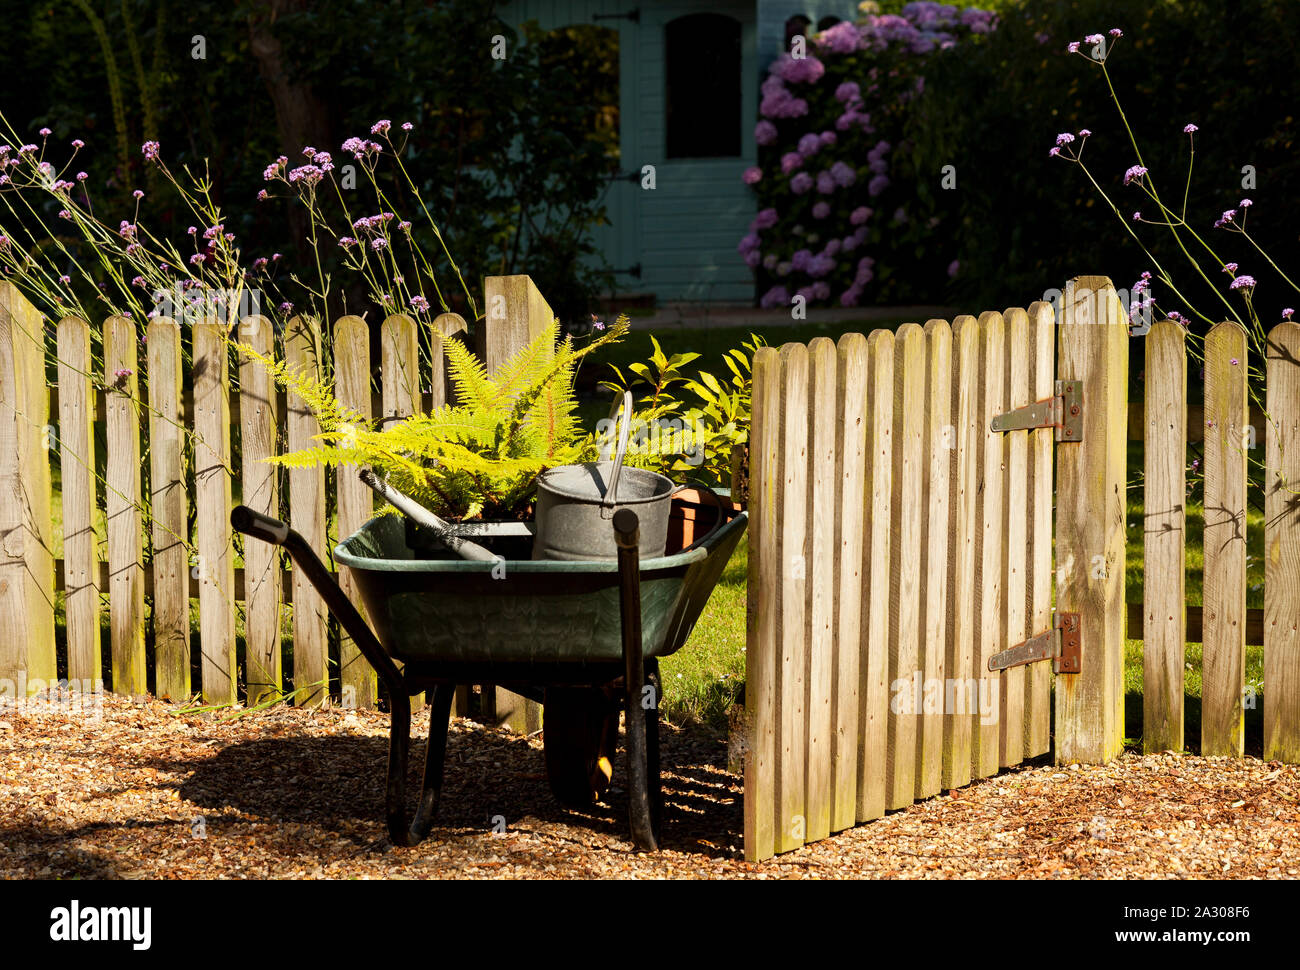 A wheelbarrow full of plants entering a garden through a wooden gate Stock Photo